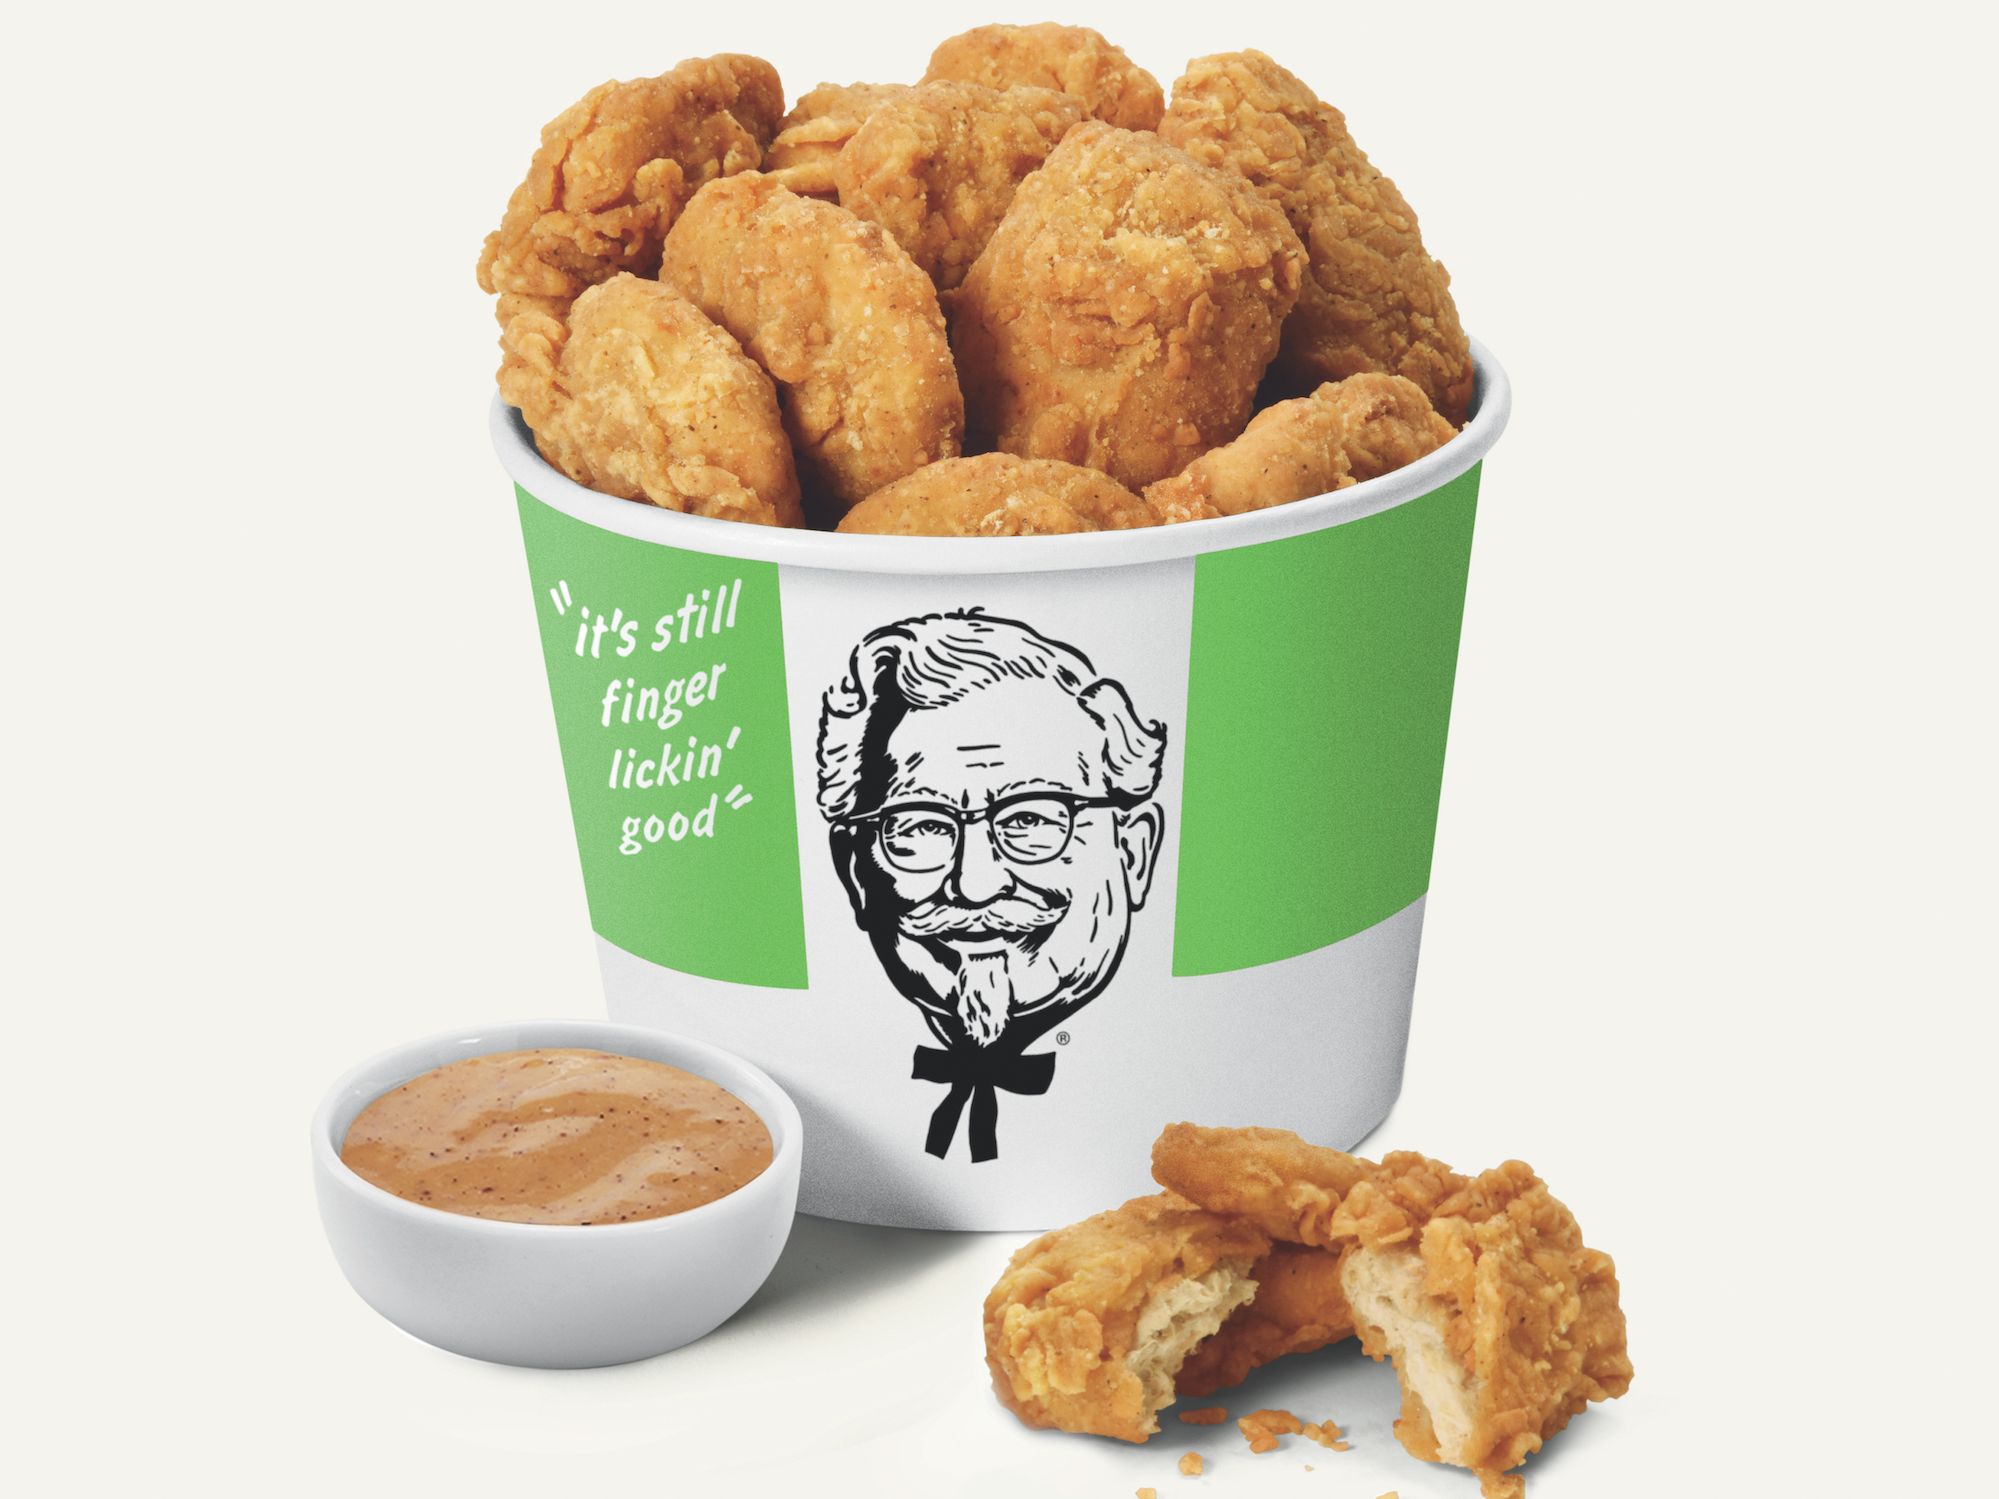 KFCも代替肉に本格参入する。